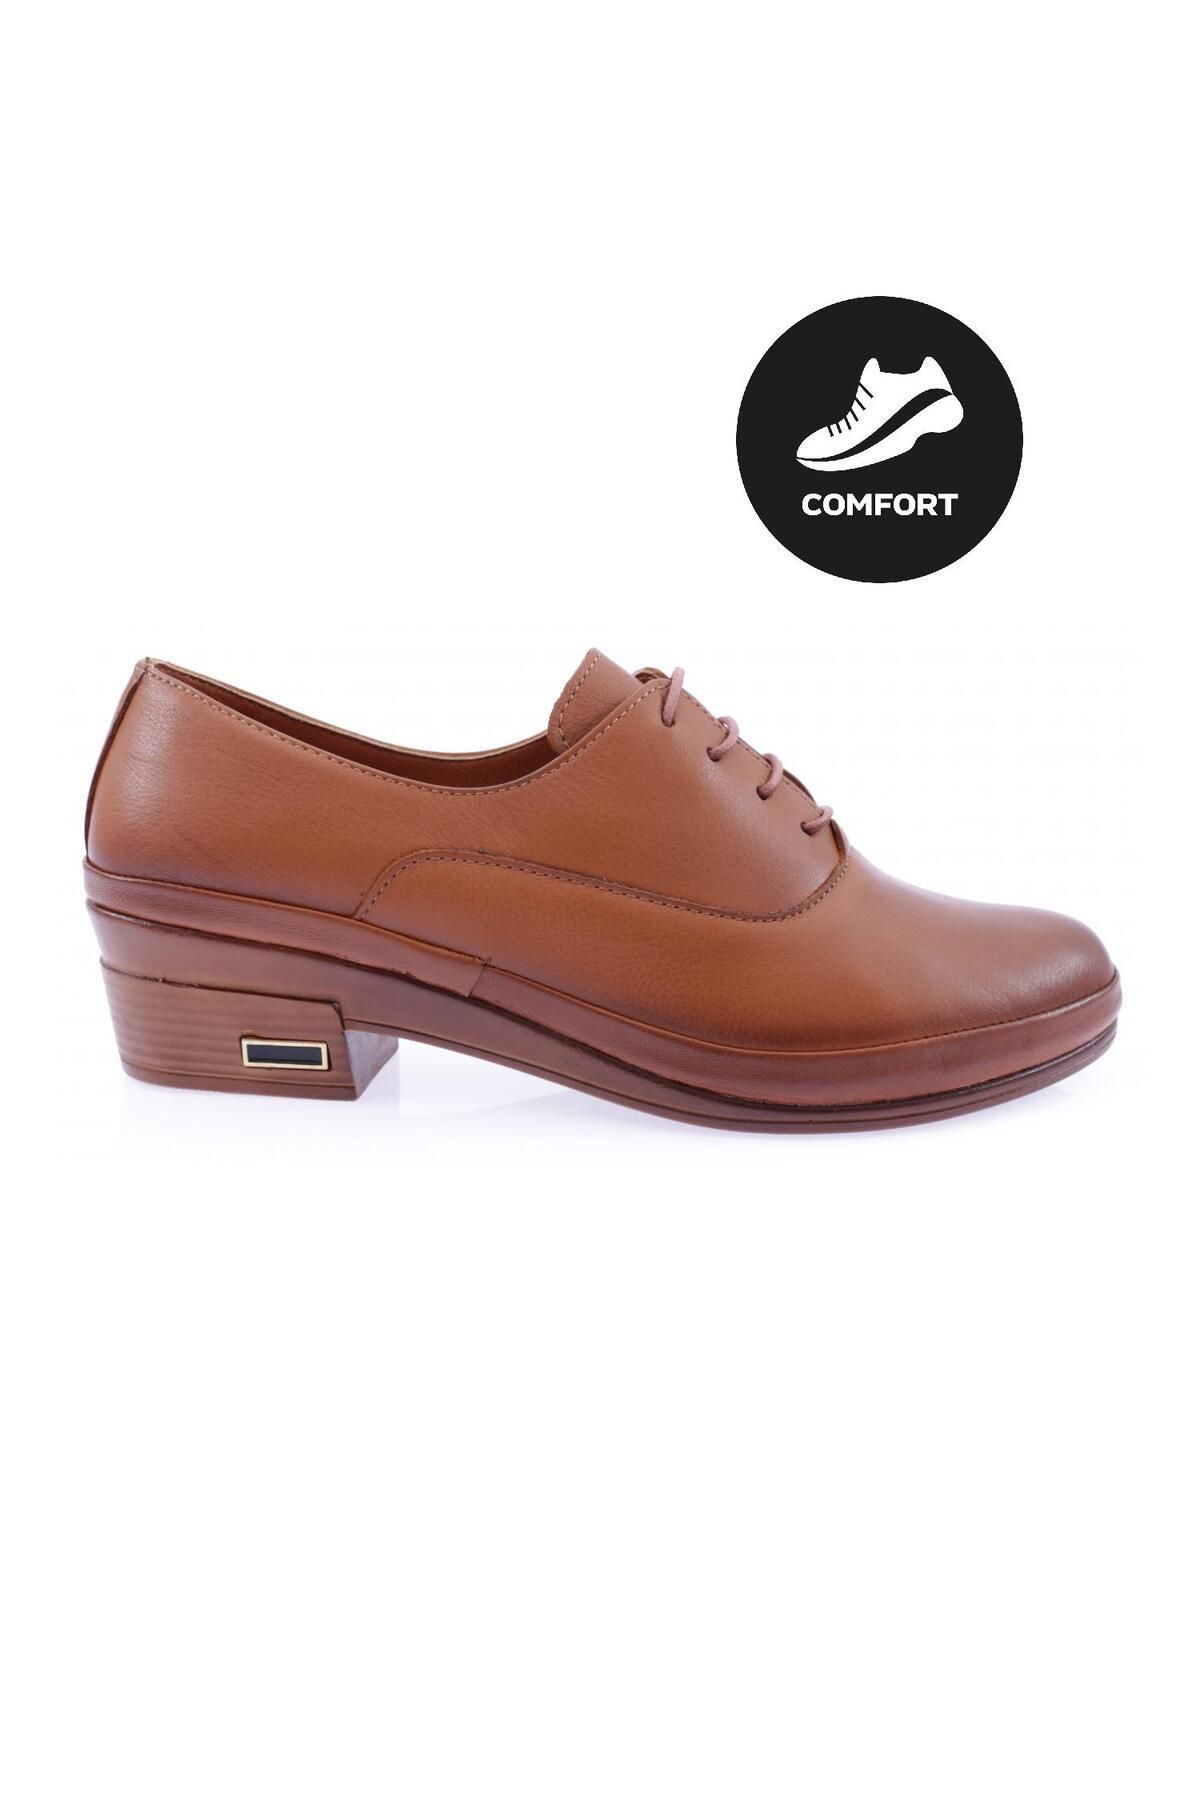 Dgn 061 Bağcıklı Comfort Ayakkabı Hakiki Deri Taba